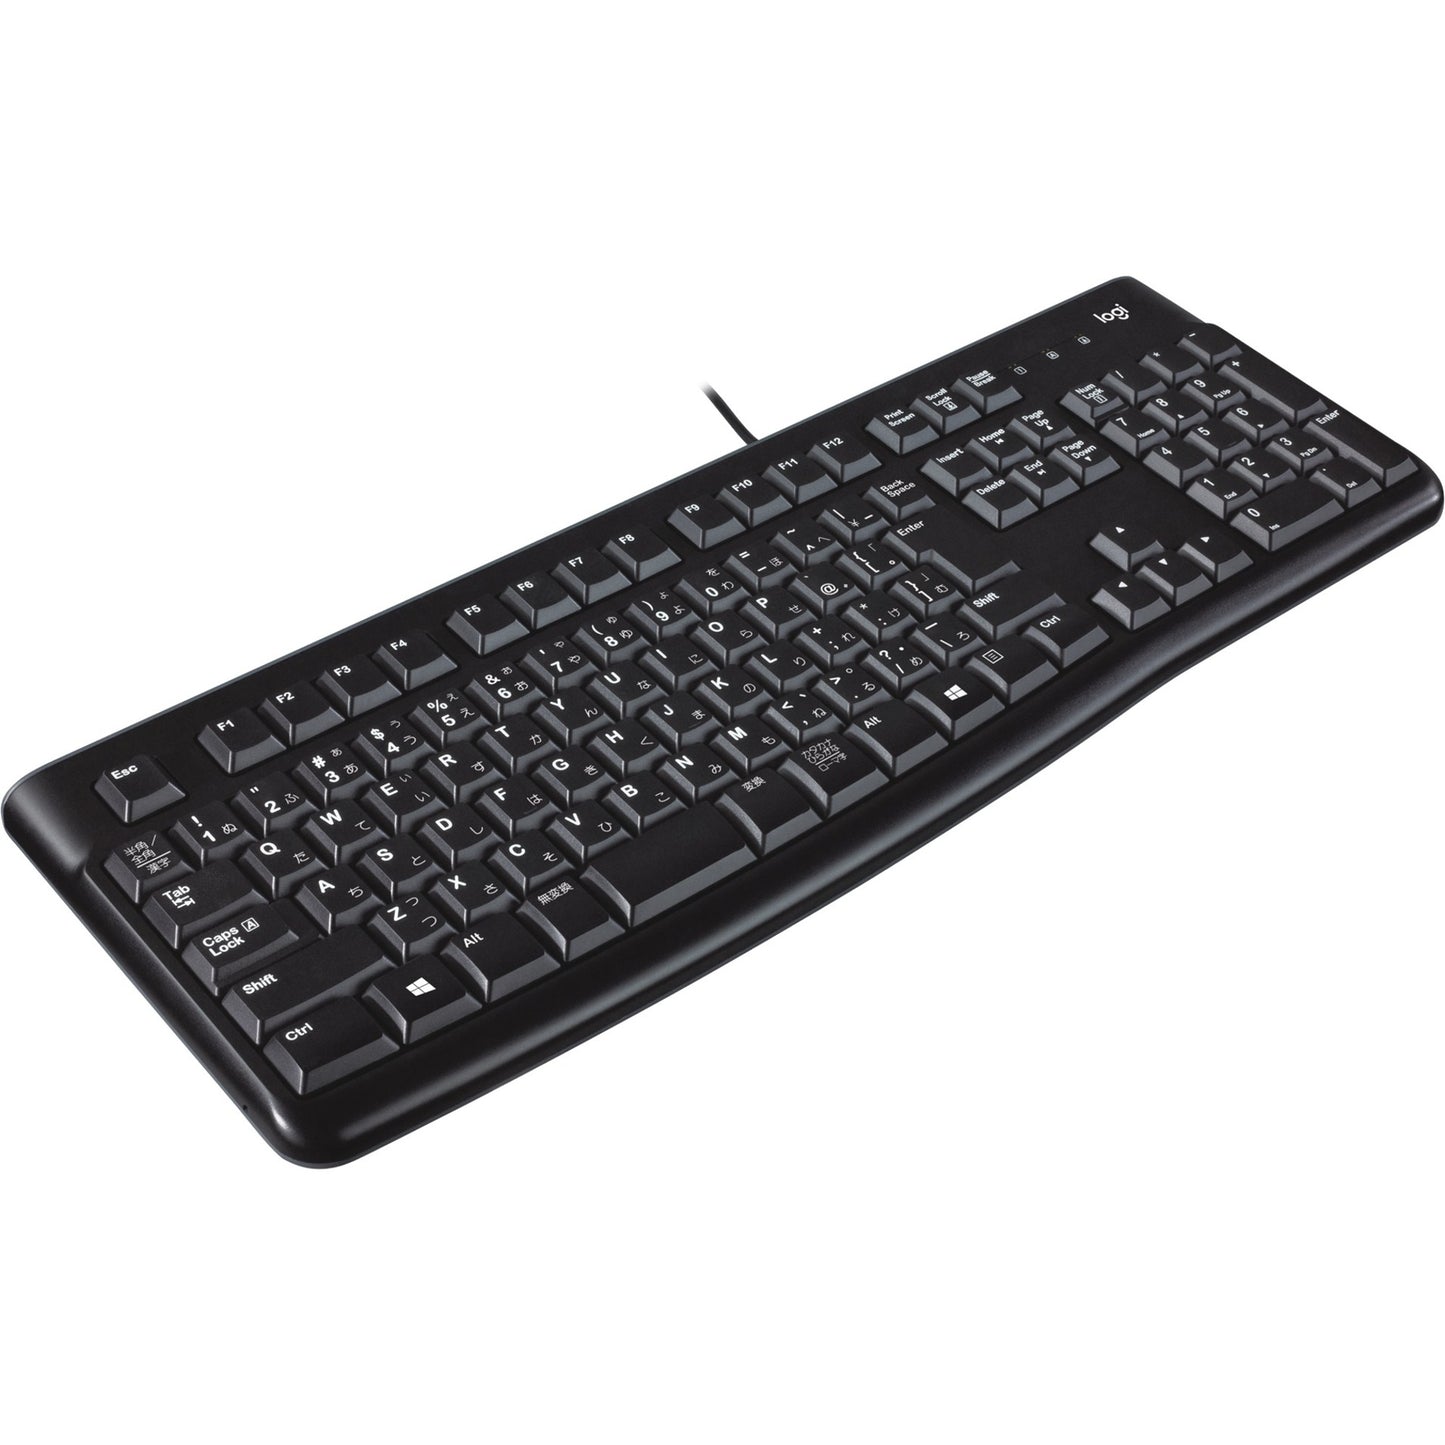 Logitech Keyboard K120 para empresas